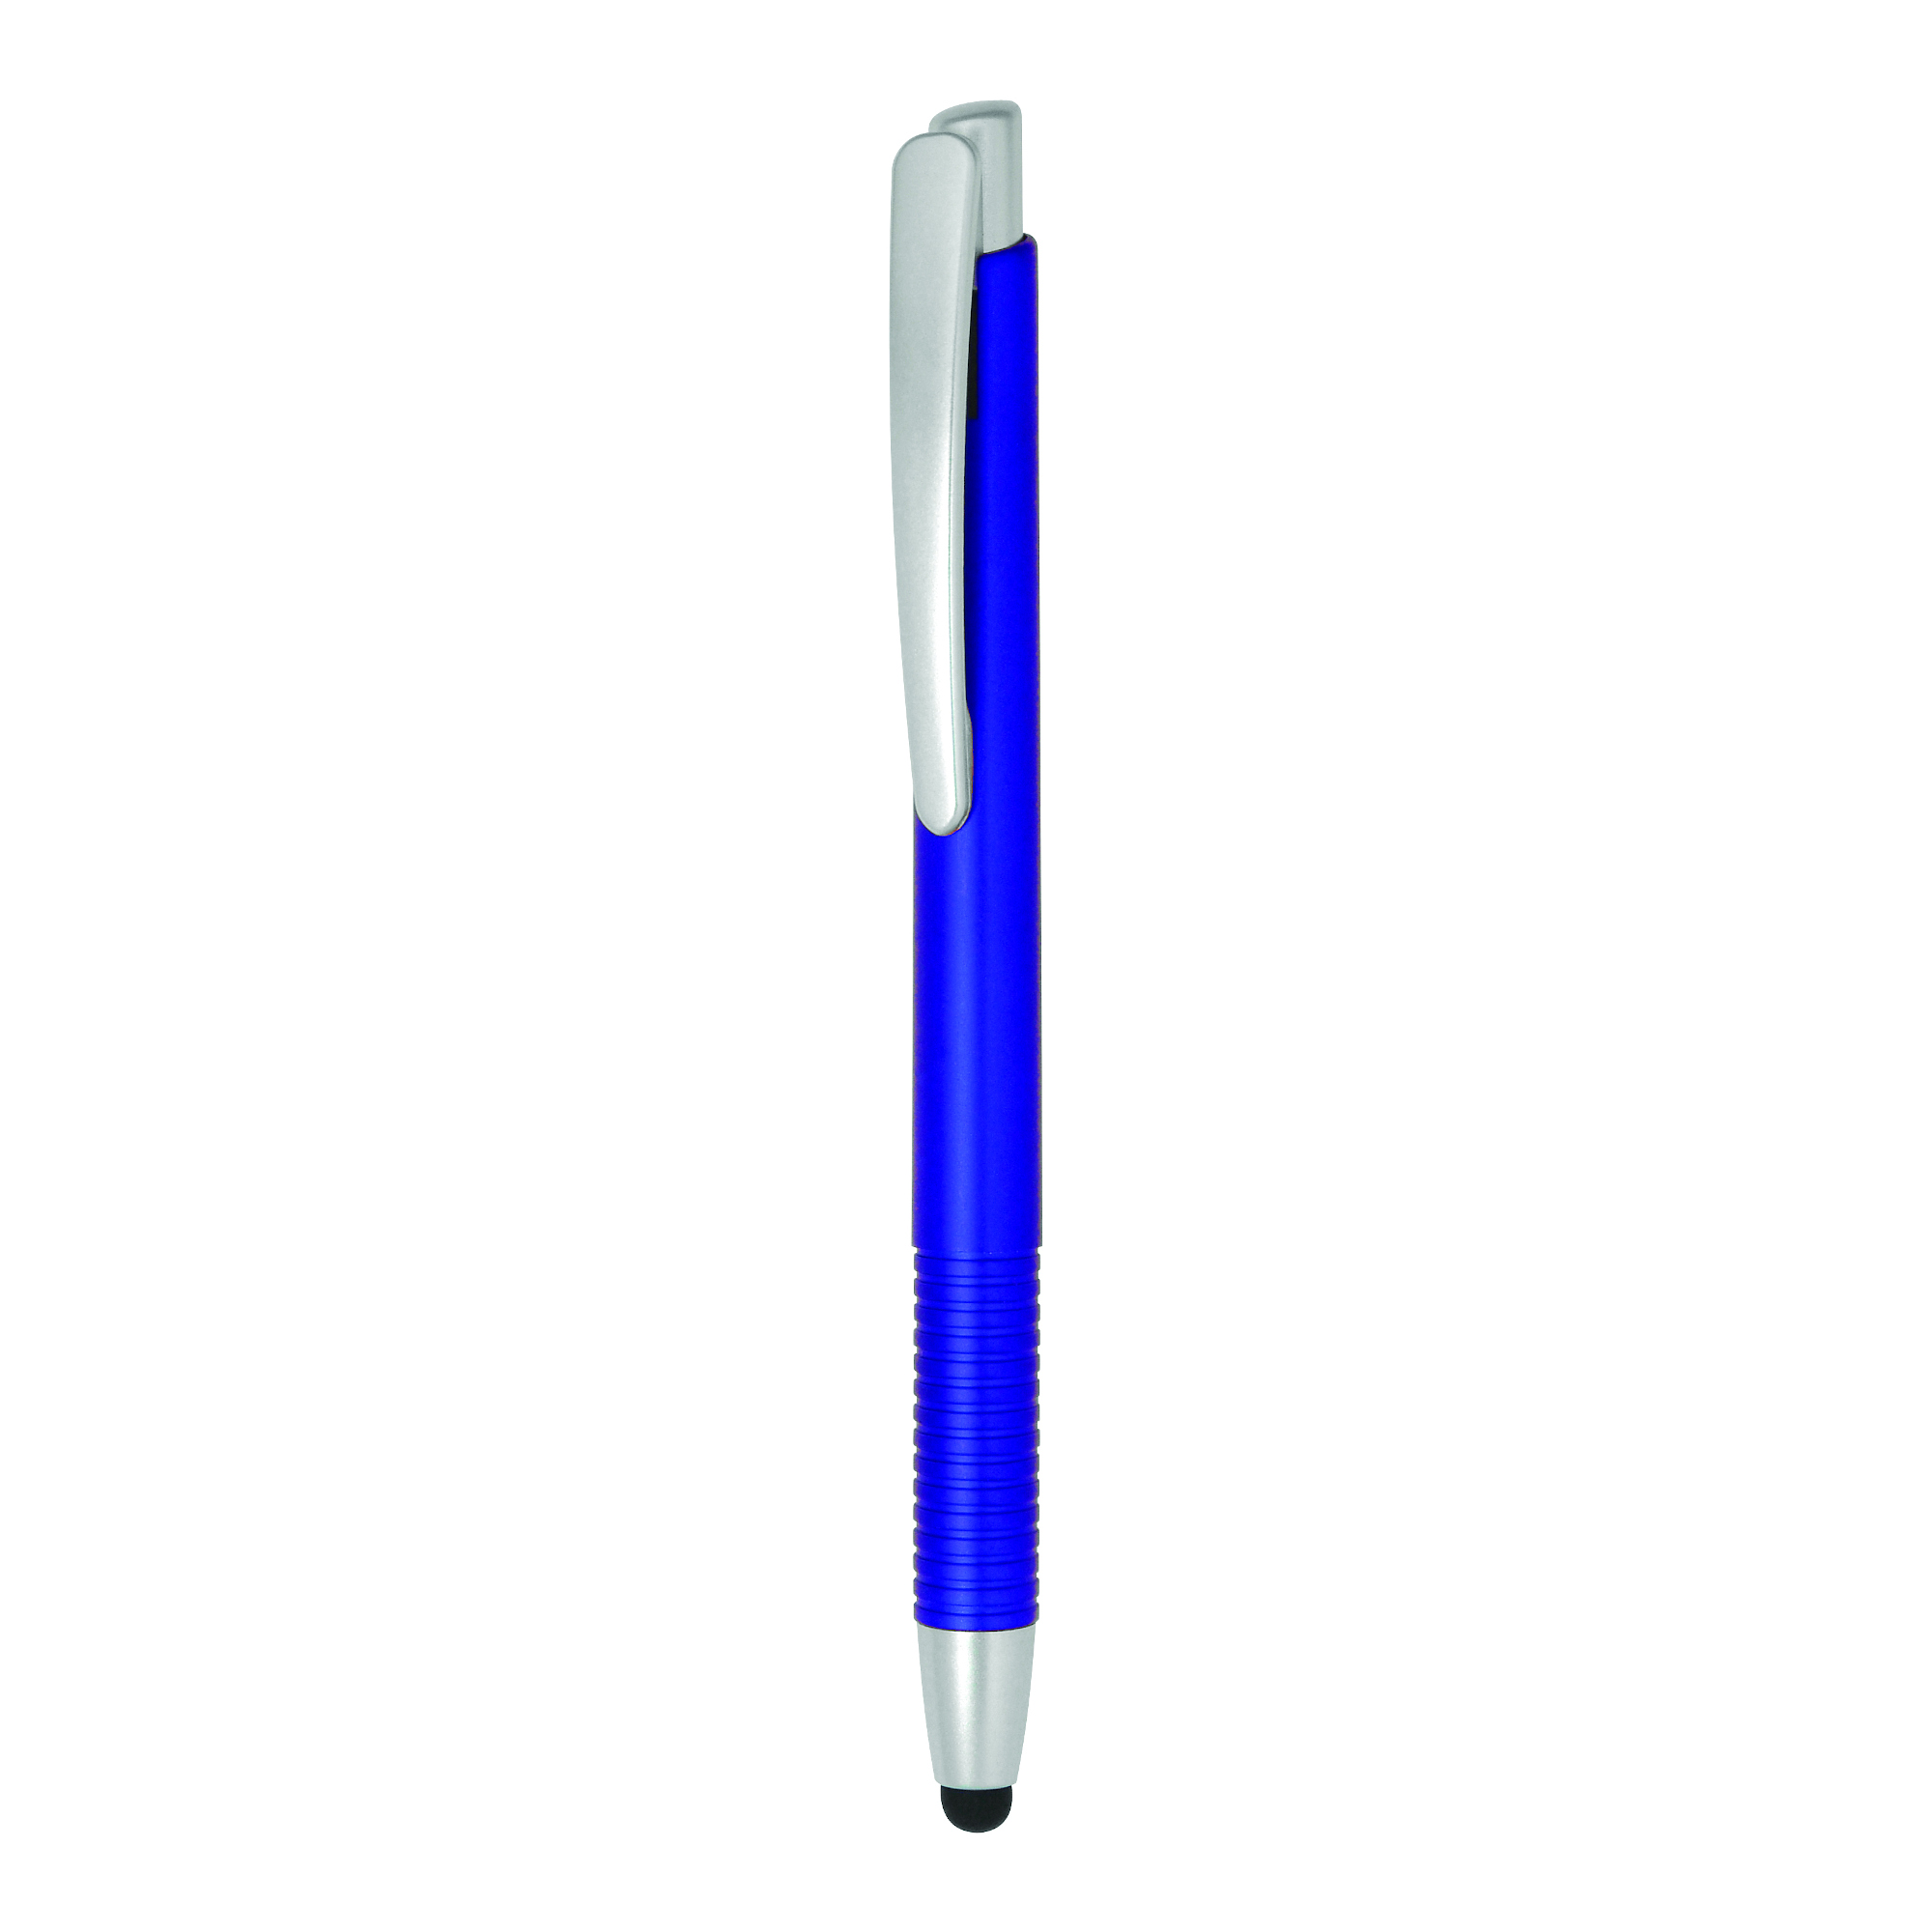 Bolígrafo con puntero Verso Stylus
Color azul y plateado